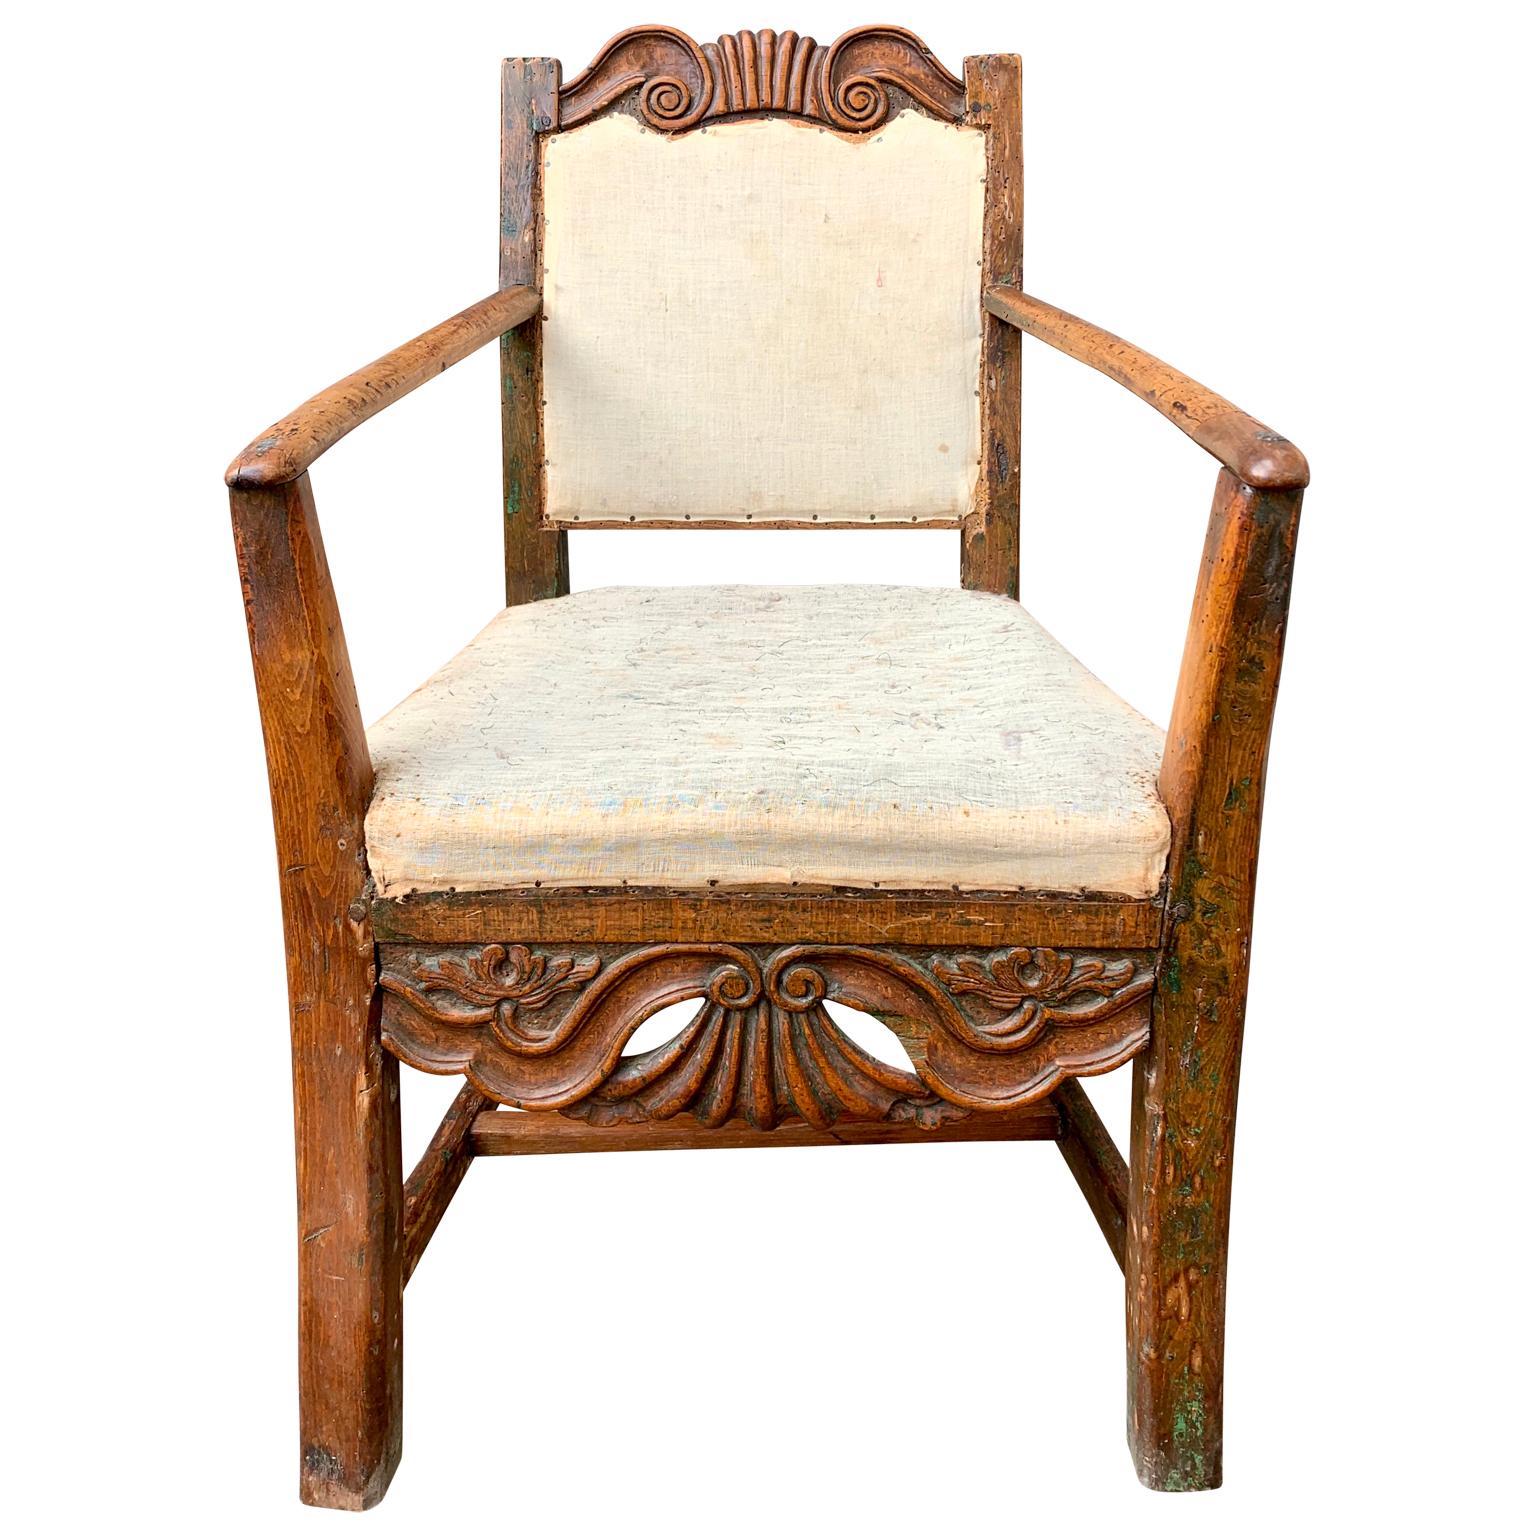 Un fauteuil d'art populaire rococo du 18ème siècle de la catégorie des meubles d'art populaire suédois typiques et principaux

 